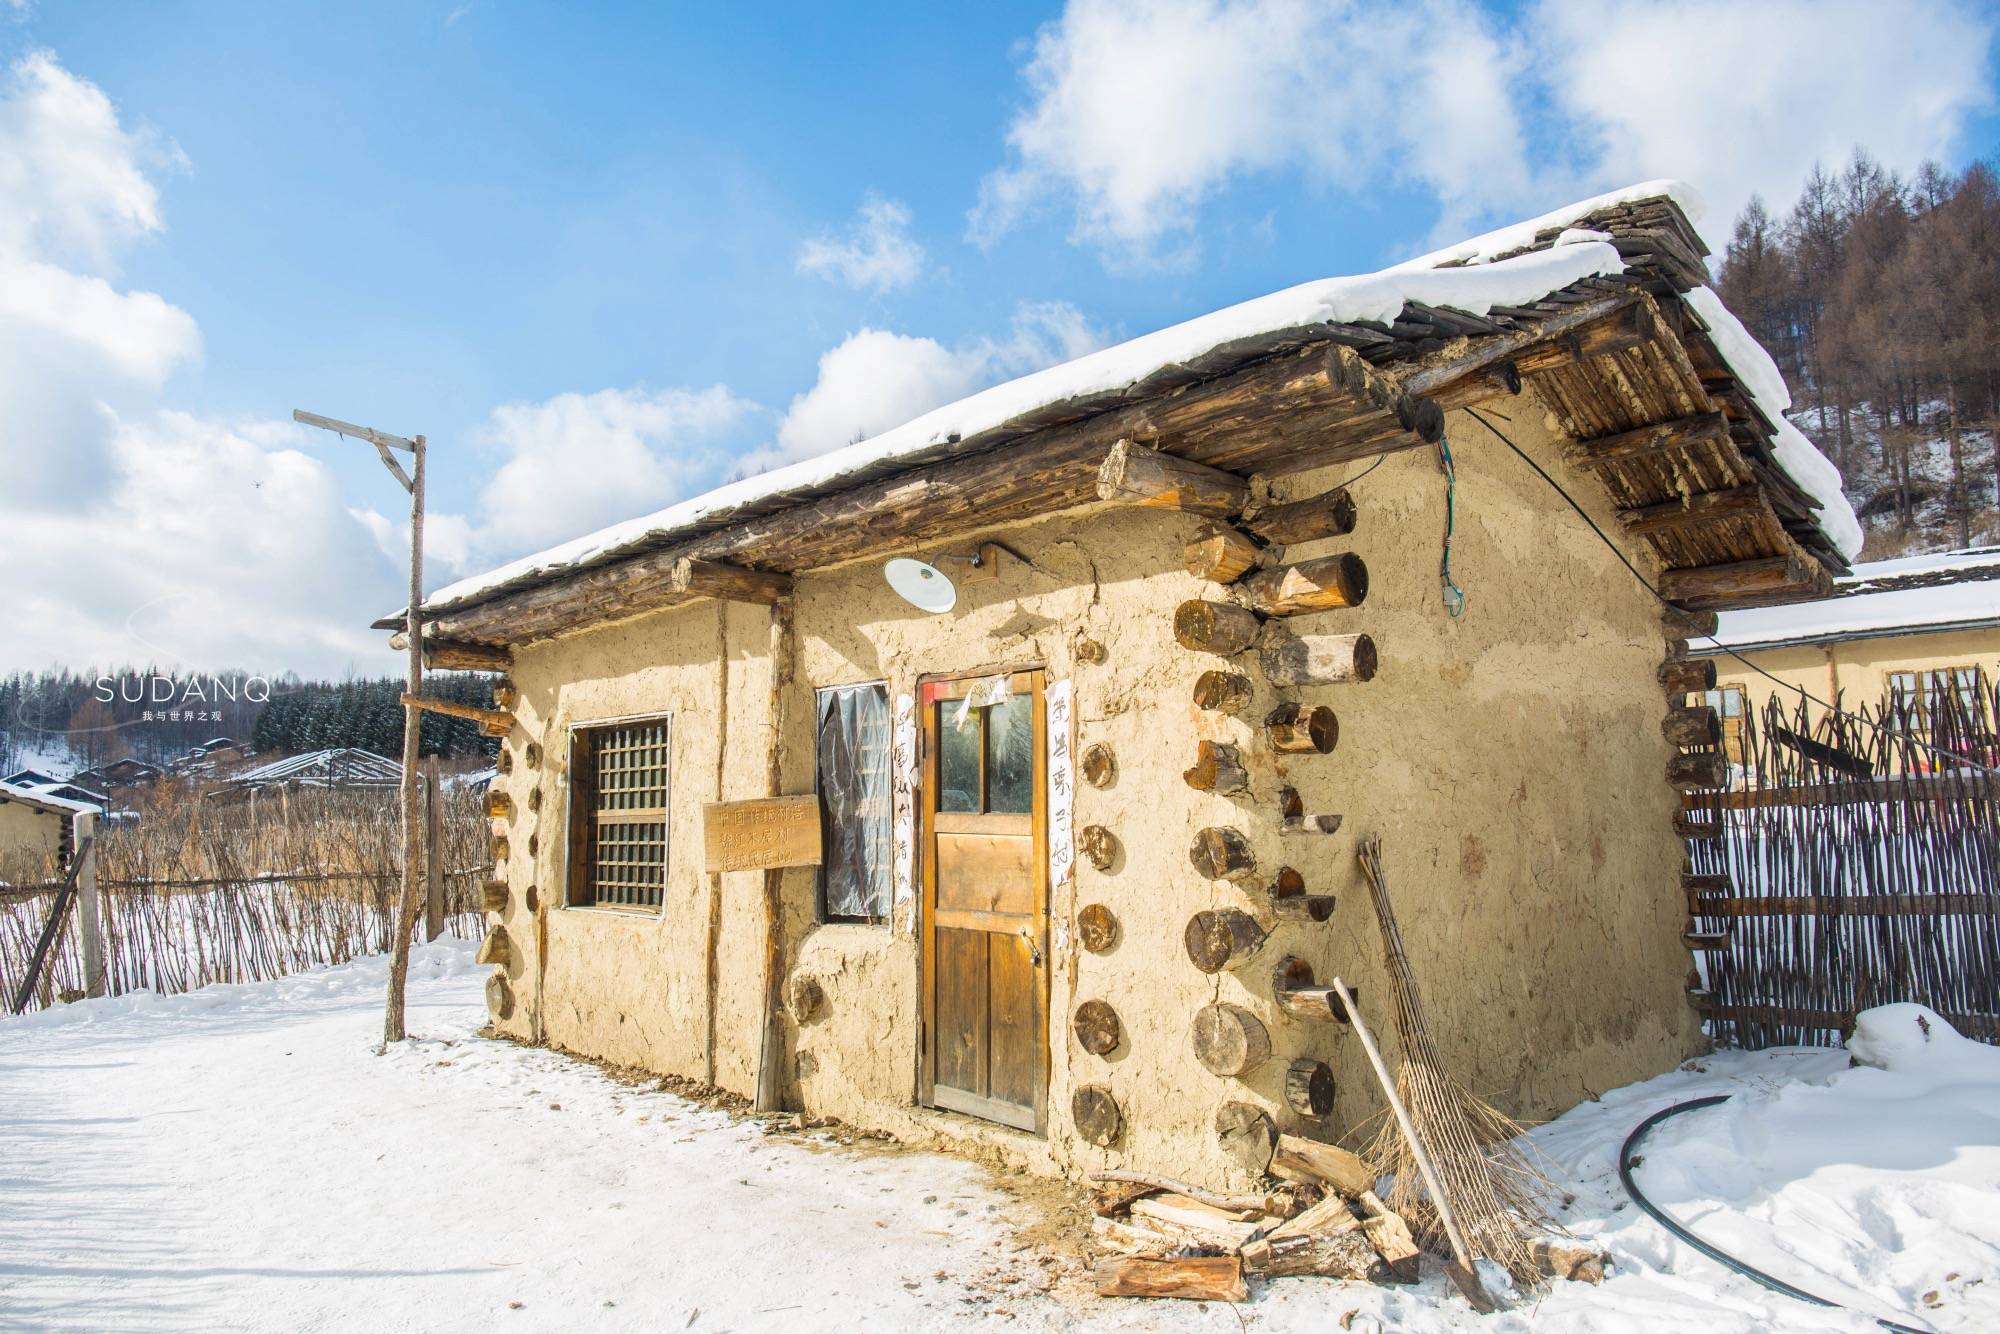 原创雪乡不是东北唯一的网红村落,还有它,堪称中国最后一个木屋村落